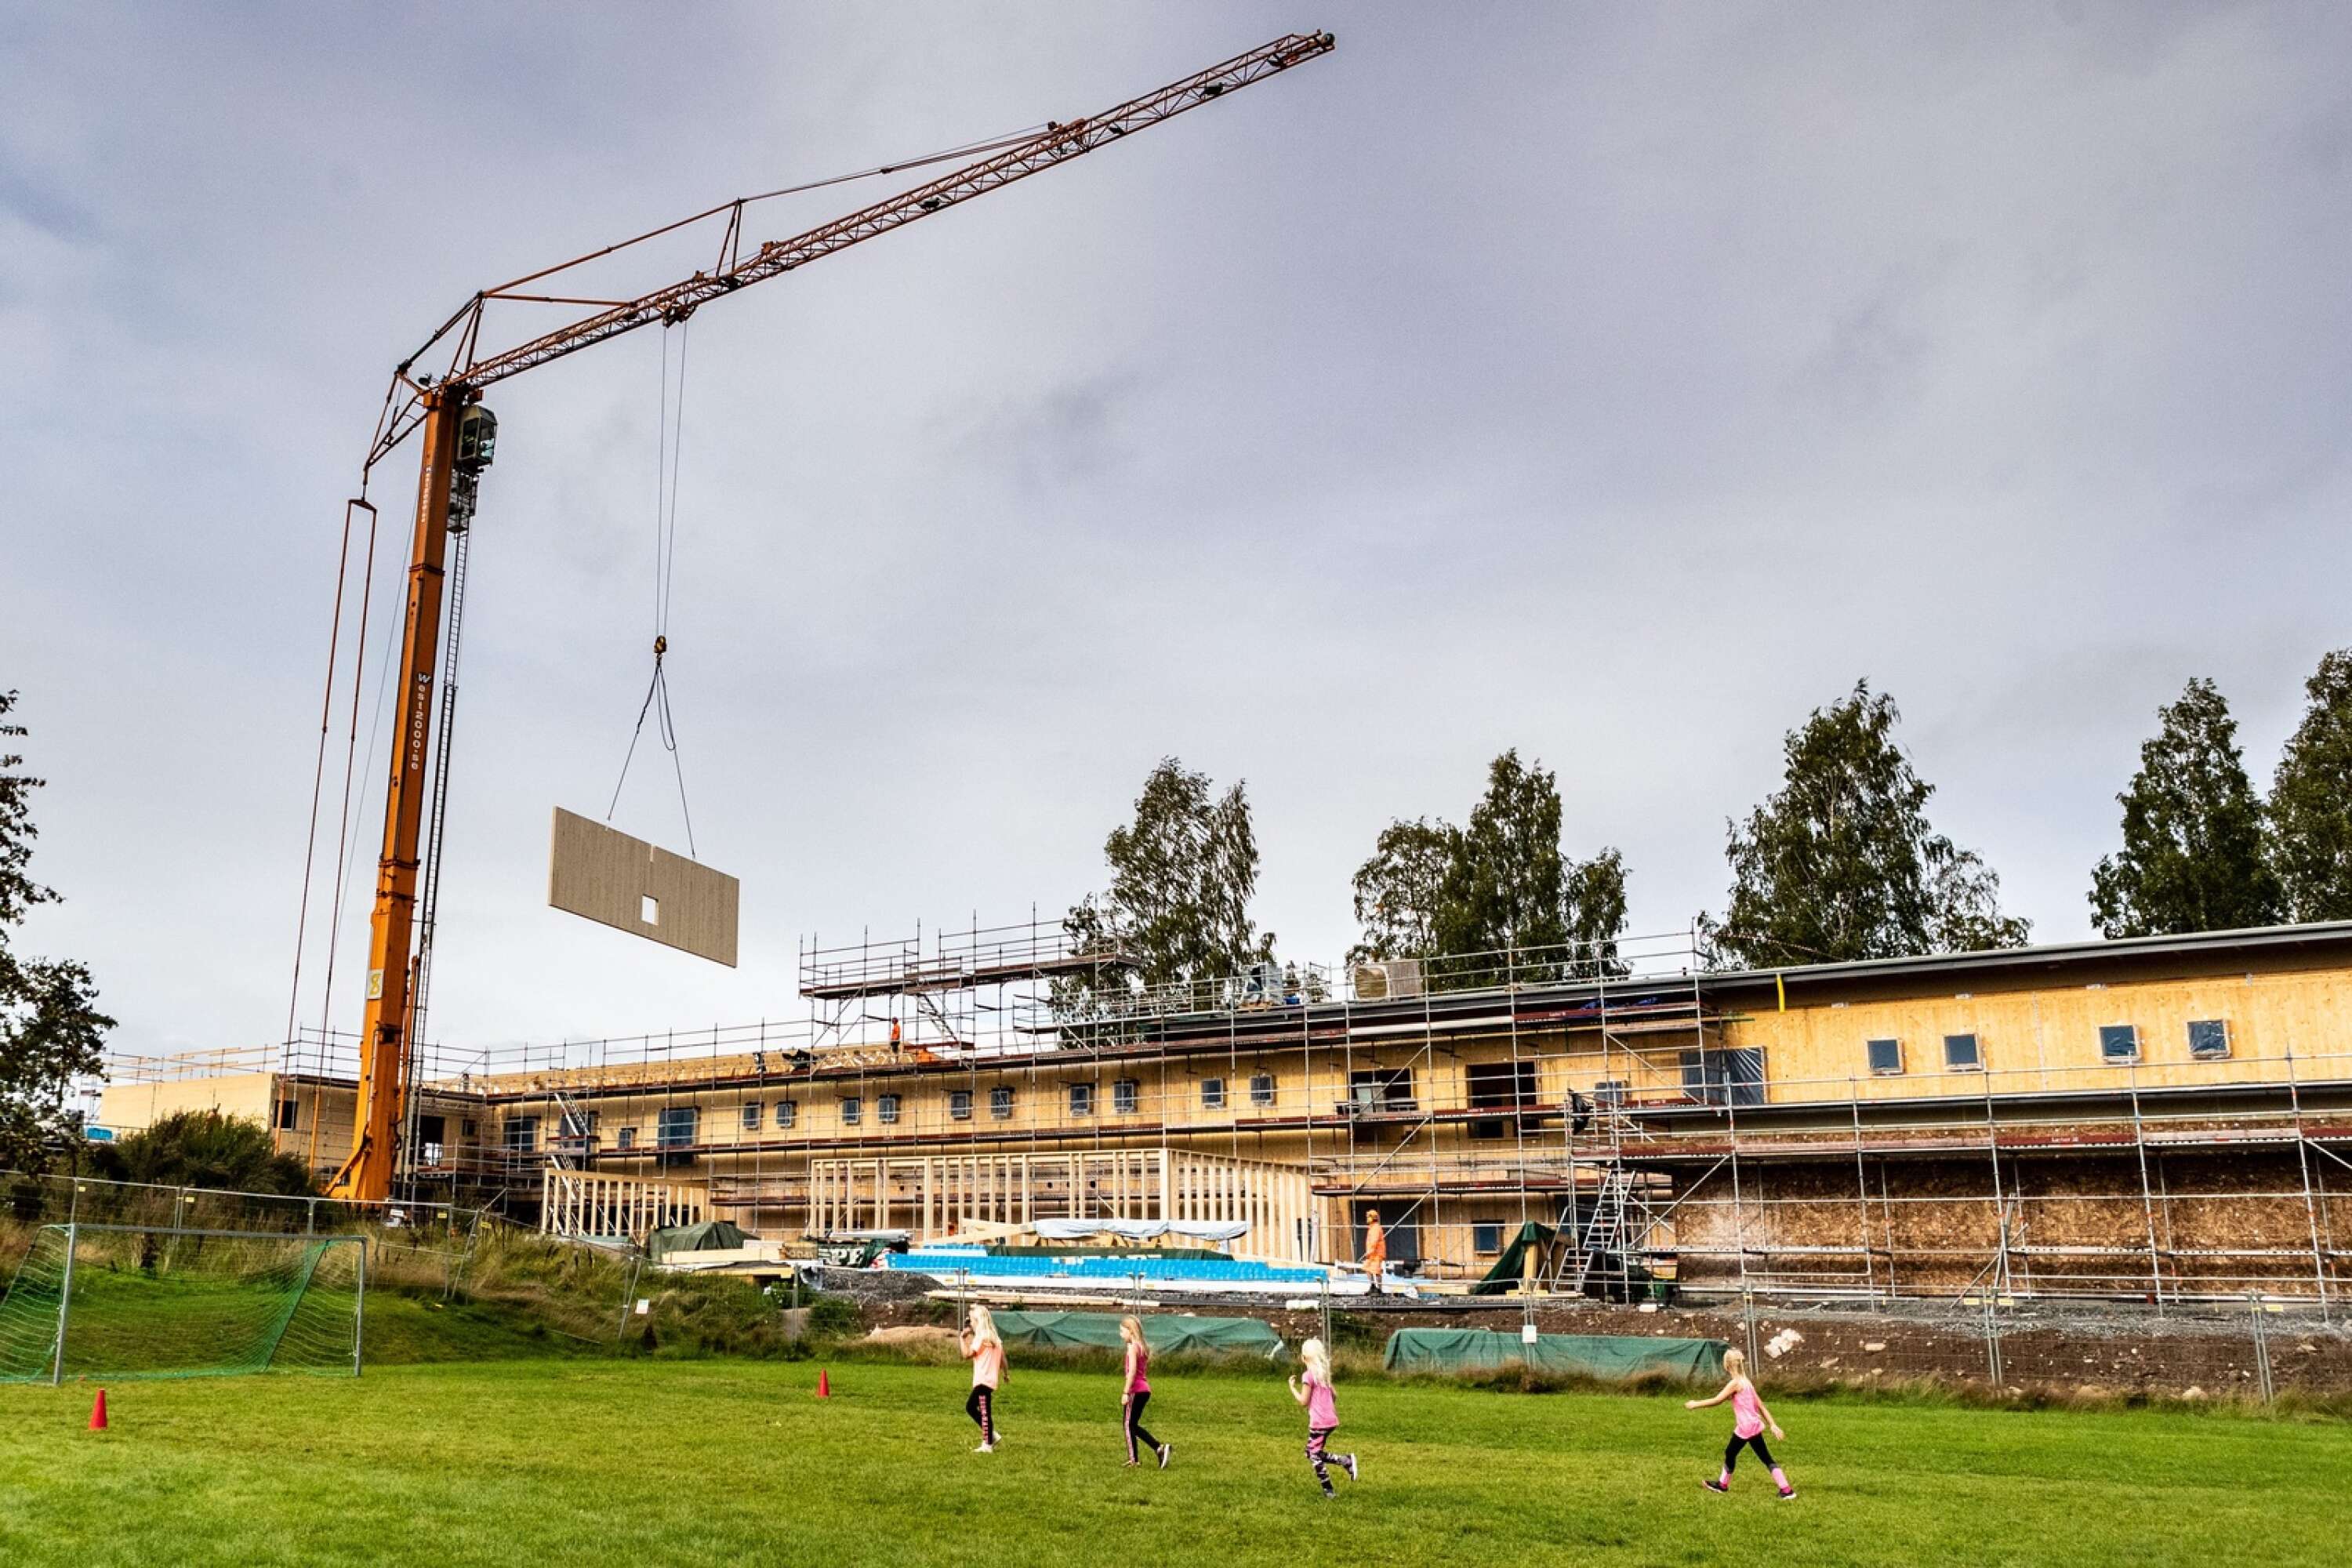 Södra skolan i Grums är byggd i korslimmat trä där elementen skapats på Gruvöns bruk, av träd från Värmland och Dalarna.
Stommen till skolan restes 2019.